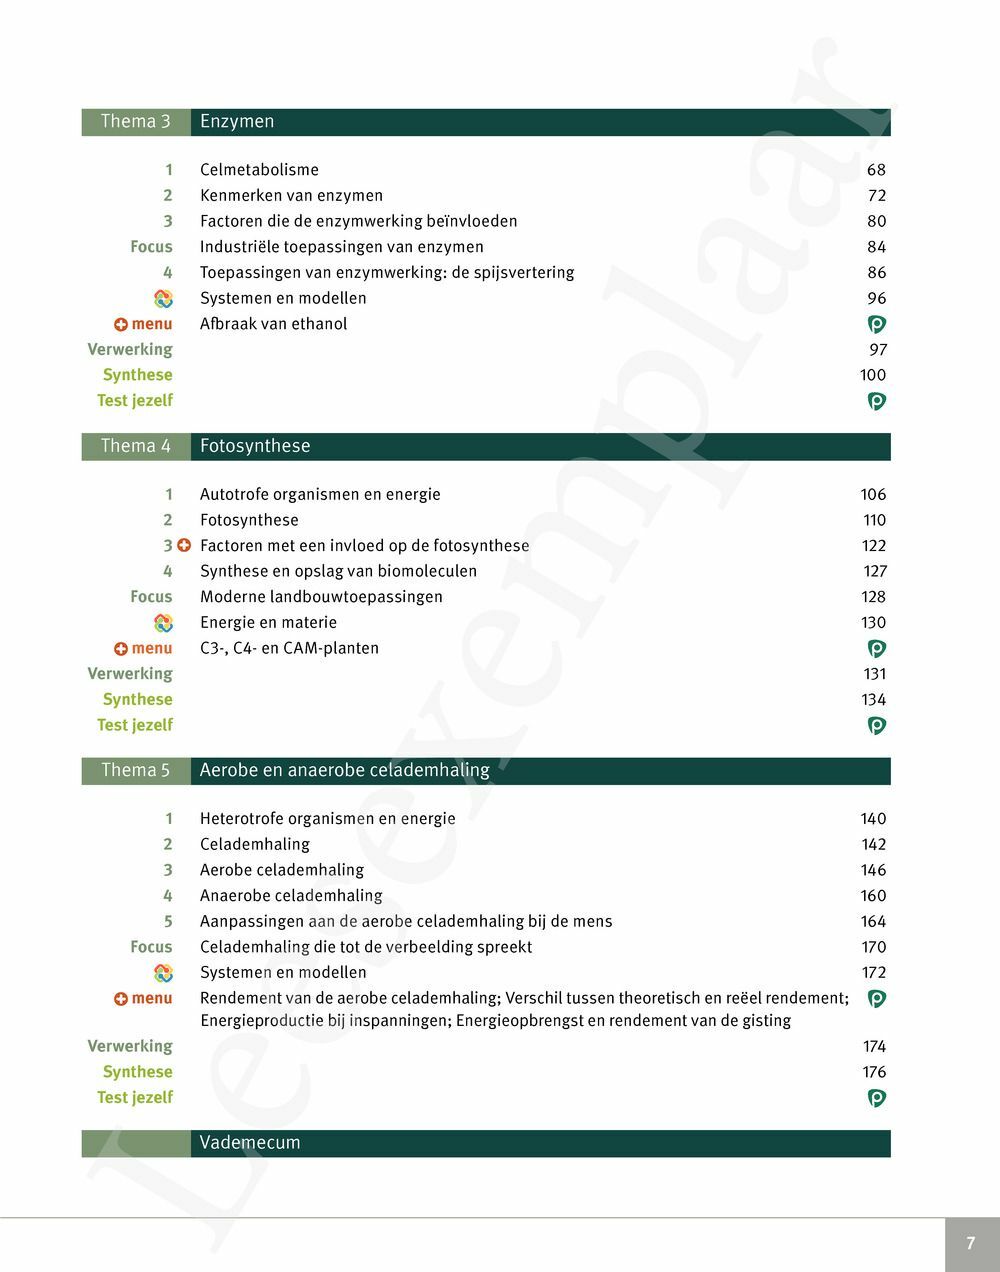 Preview: Focus Biologie 5 Cel en celprocessen Handboek (incl. Pelckmans Portaal)